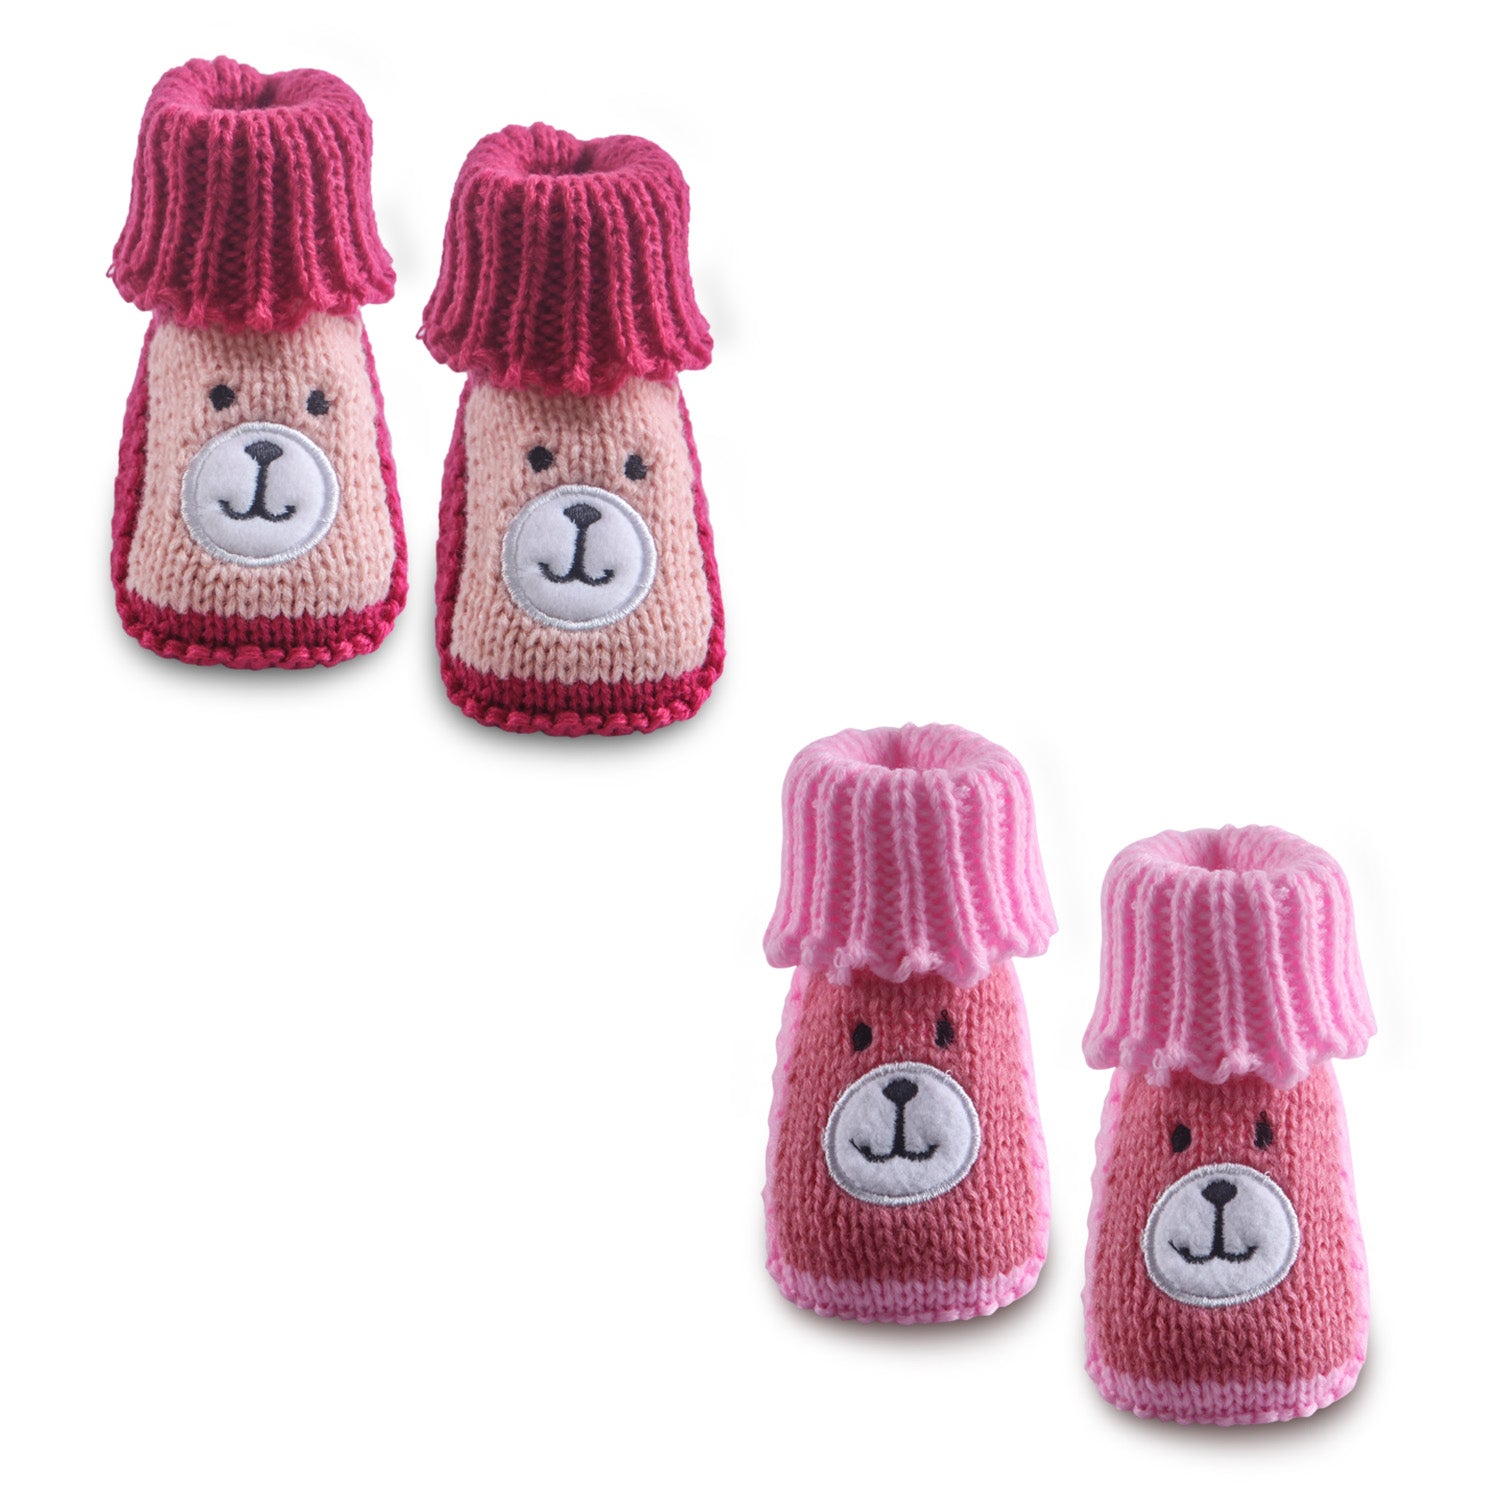 Baby Moo Newborn Crochet Woollen Booties Teddy - Red, Pink